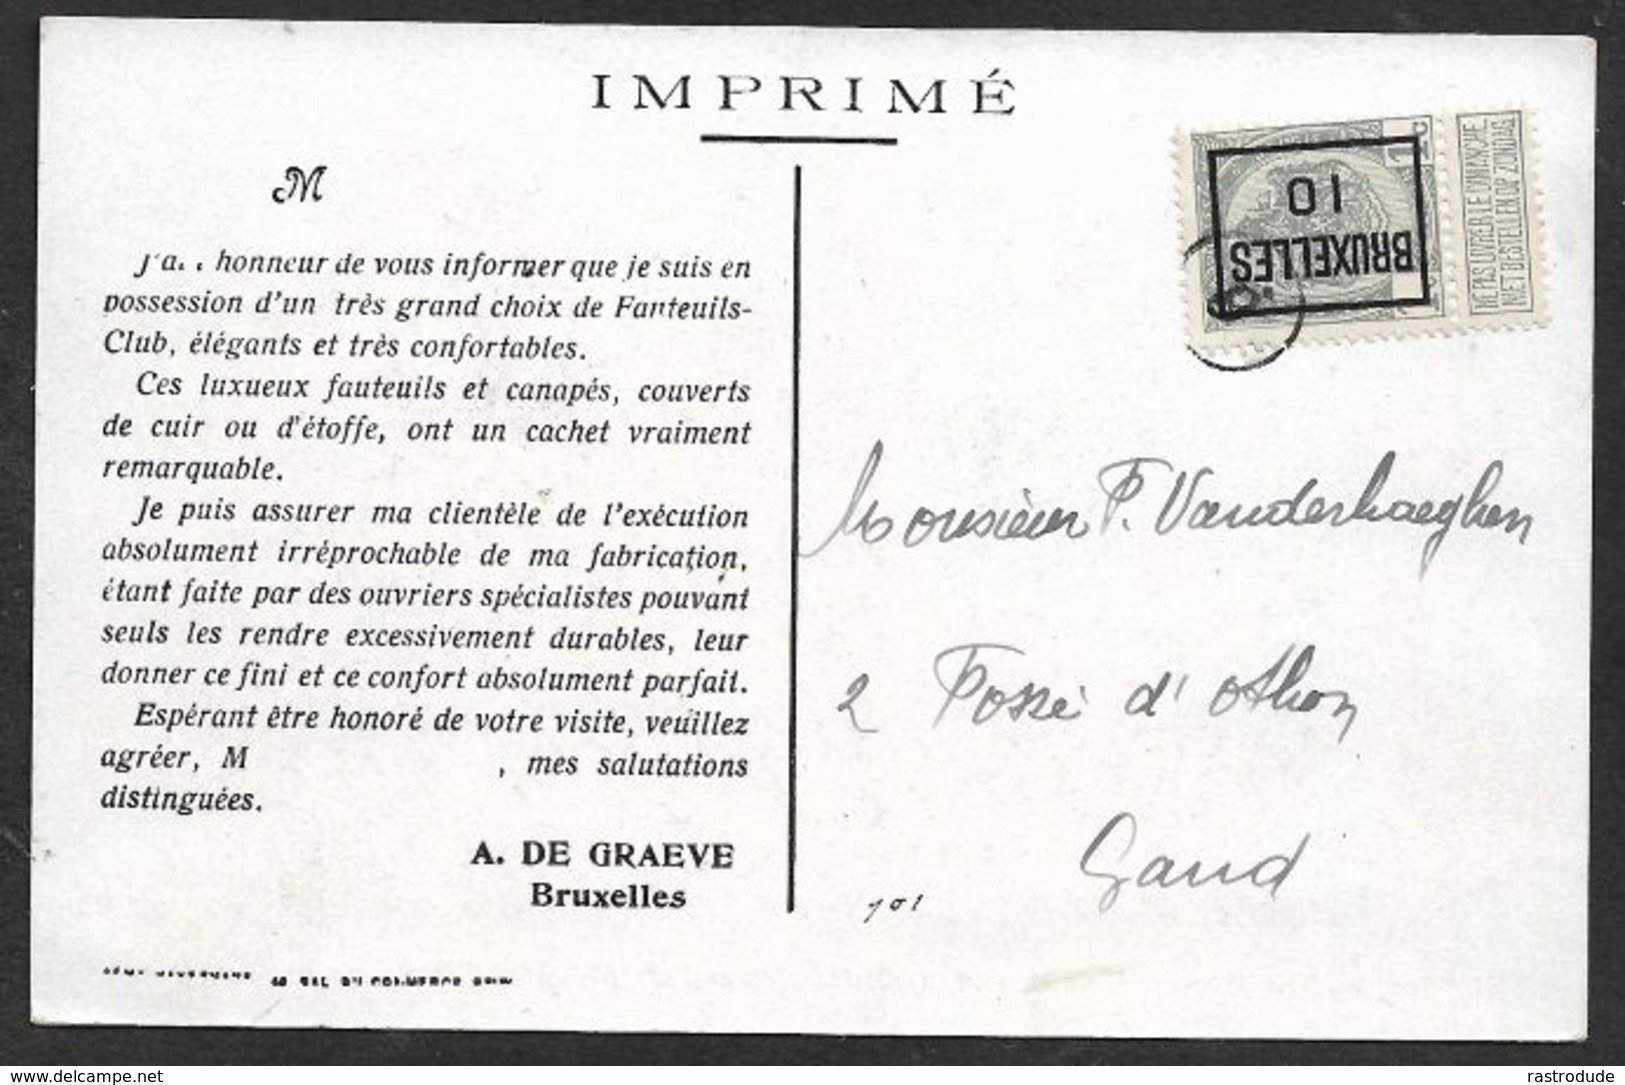 1910 BELGIQUE - IMPRIMÉ PRÉOBLITÉRÉ 1c BRUXELLES  A GAND  - LUXUEUX FAUTEUILS ET CANAPÉS - Rolstempels 1900-09